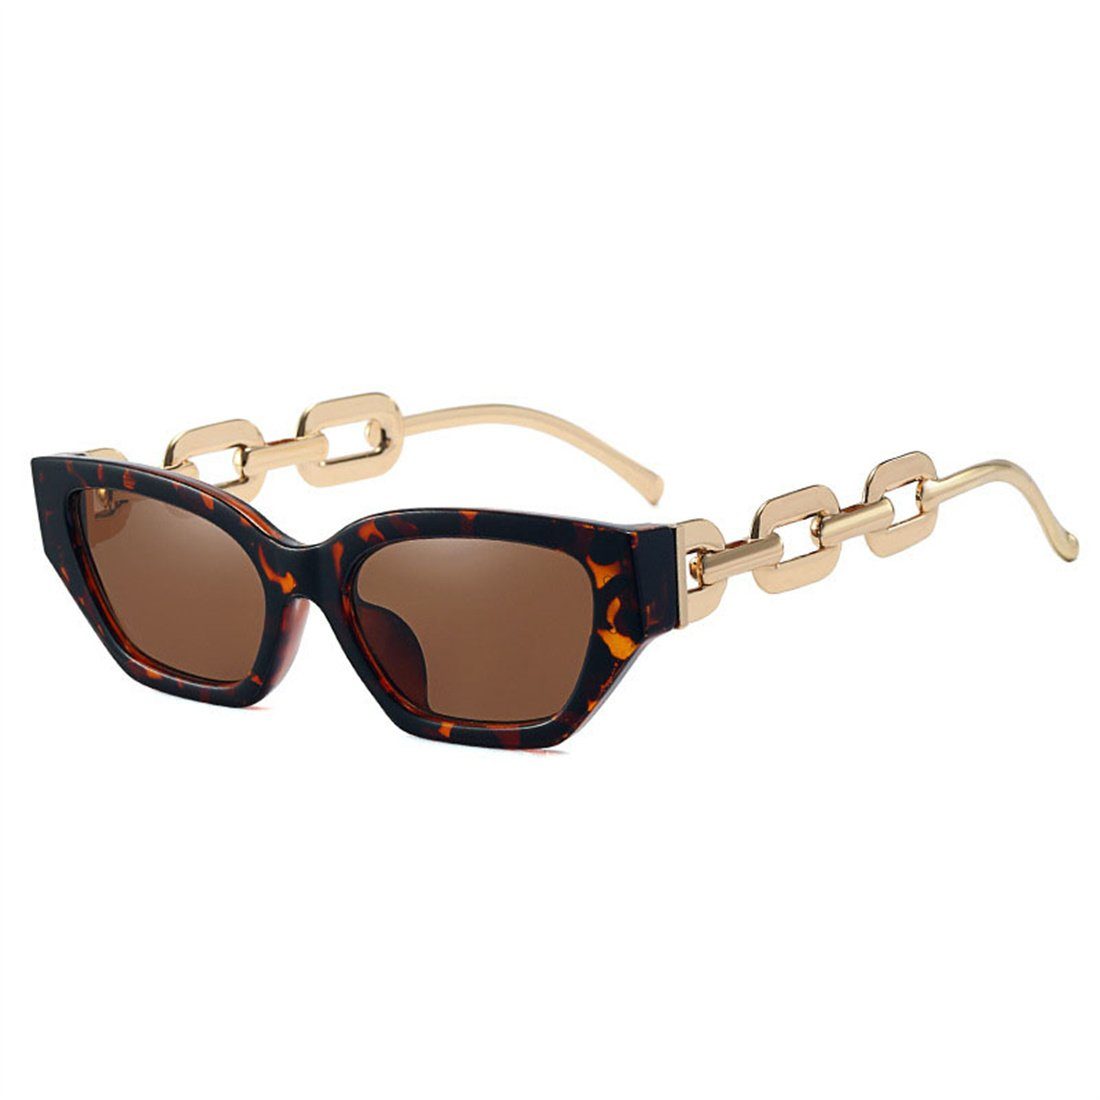 Metall,Sonnenbrille Sonnenbrille DÖRÖY C aus Rahmen Trendige mit Damen-Sonnenbrille kleinem